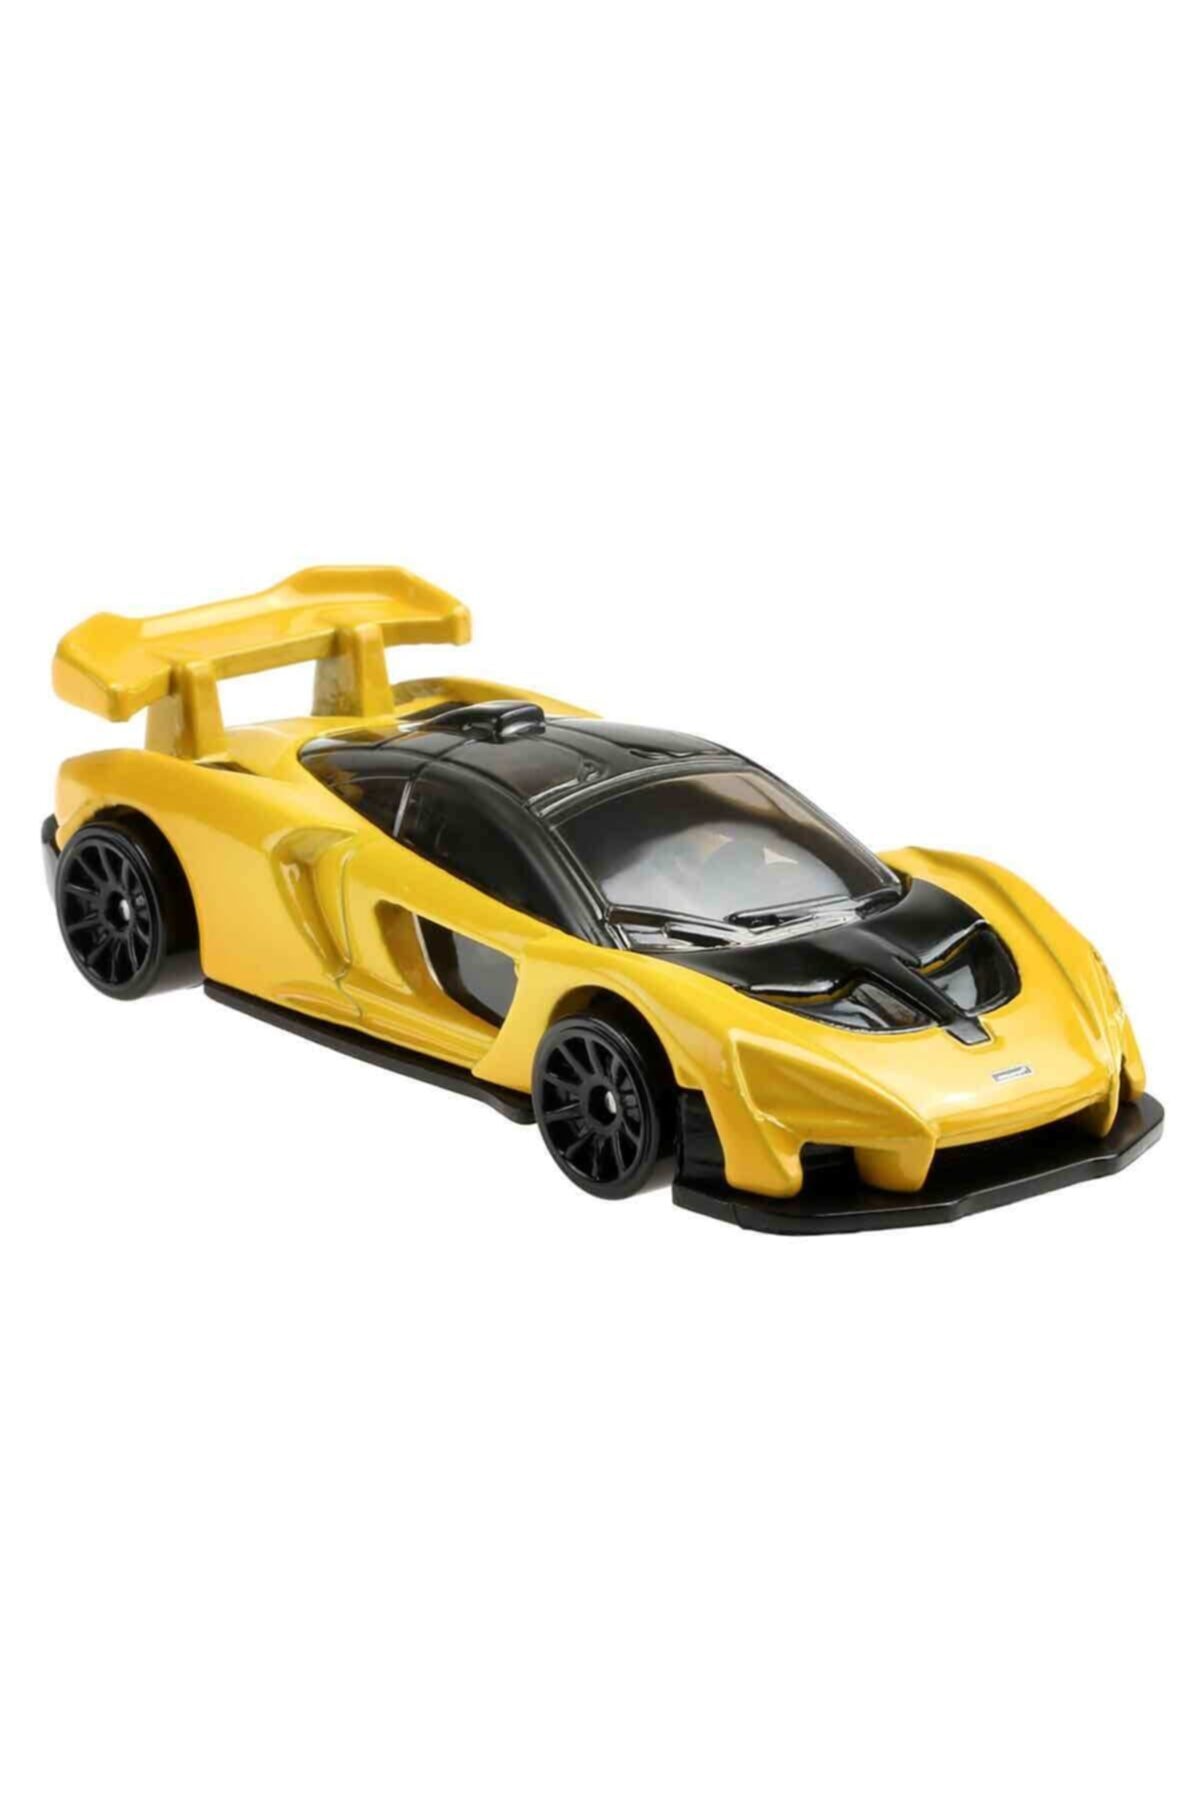 Mattel Hot Wheels GYN21 Milde Finals Serie 2021 Car McLaren Senna  1/5 